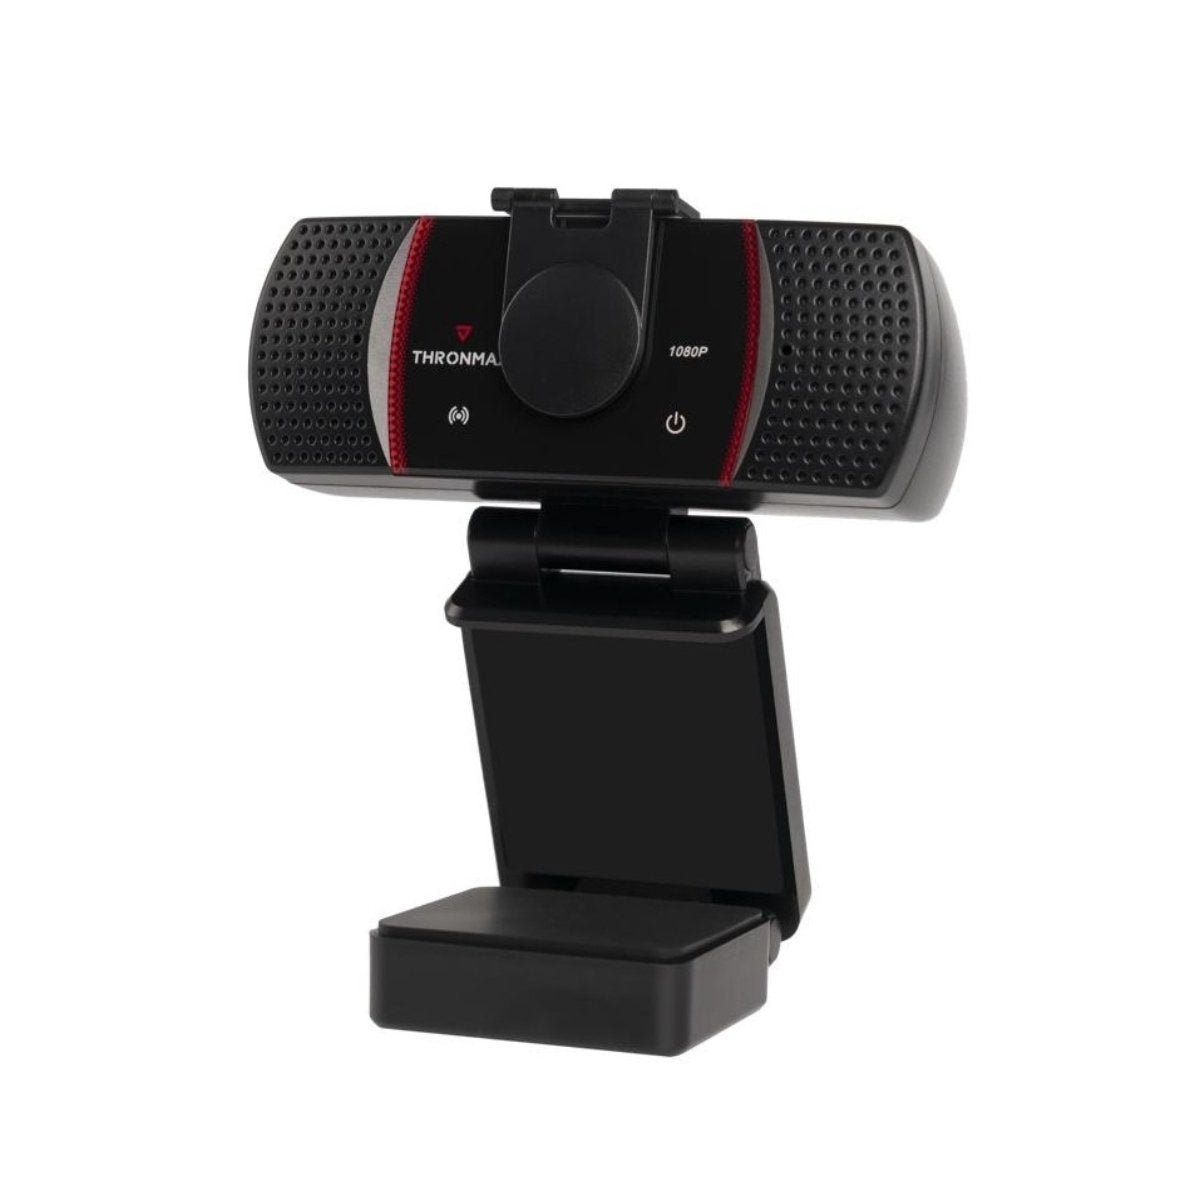 Thronmax X1 Stream Go Webcam 1080P FHD - Store 974 | ستور ٩٧٤